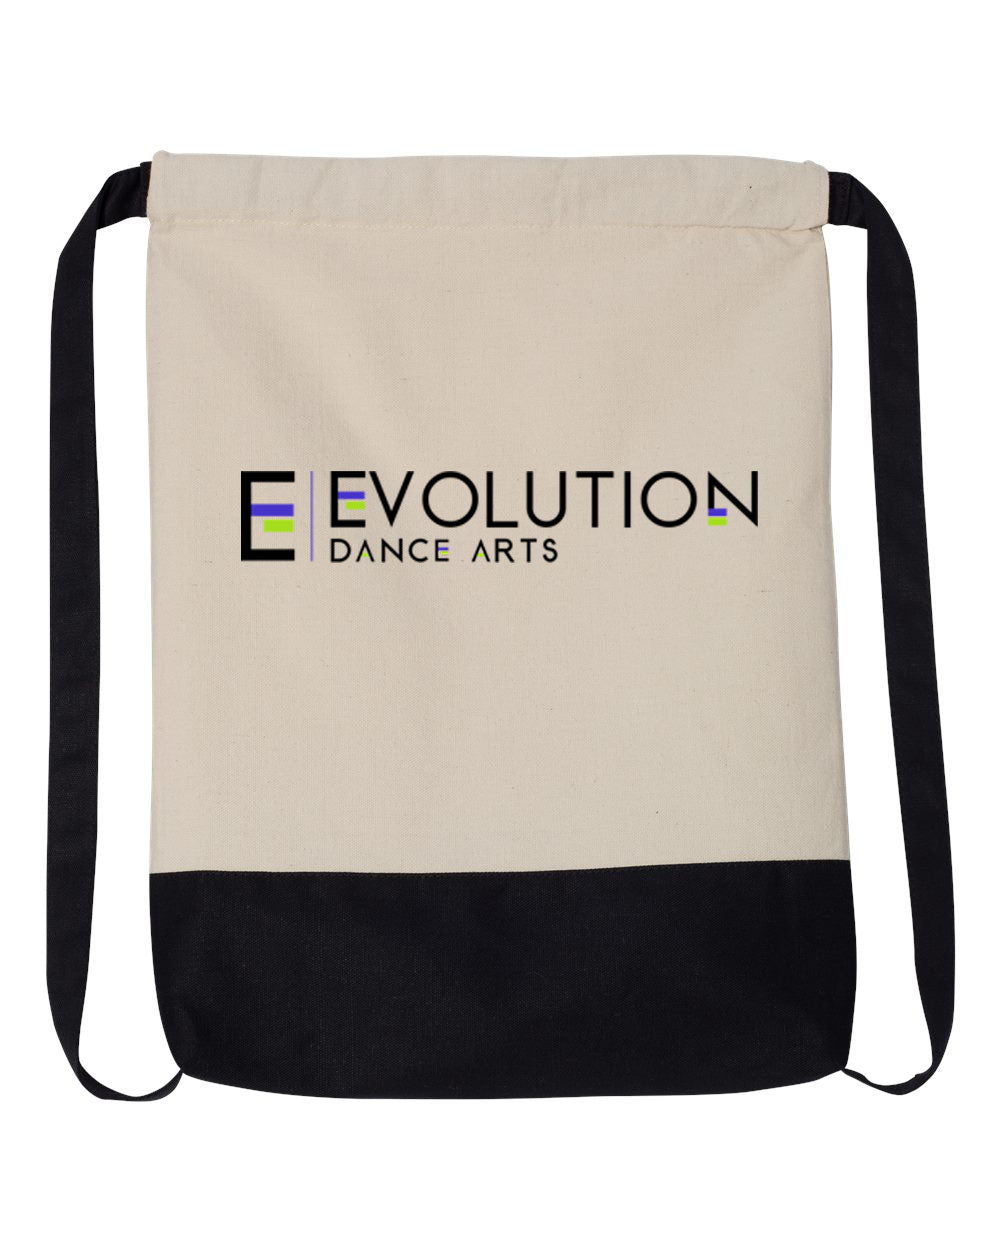 Evolution Dance Arts design 1 Drawstring Bag